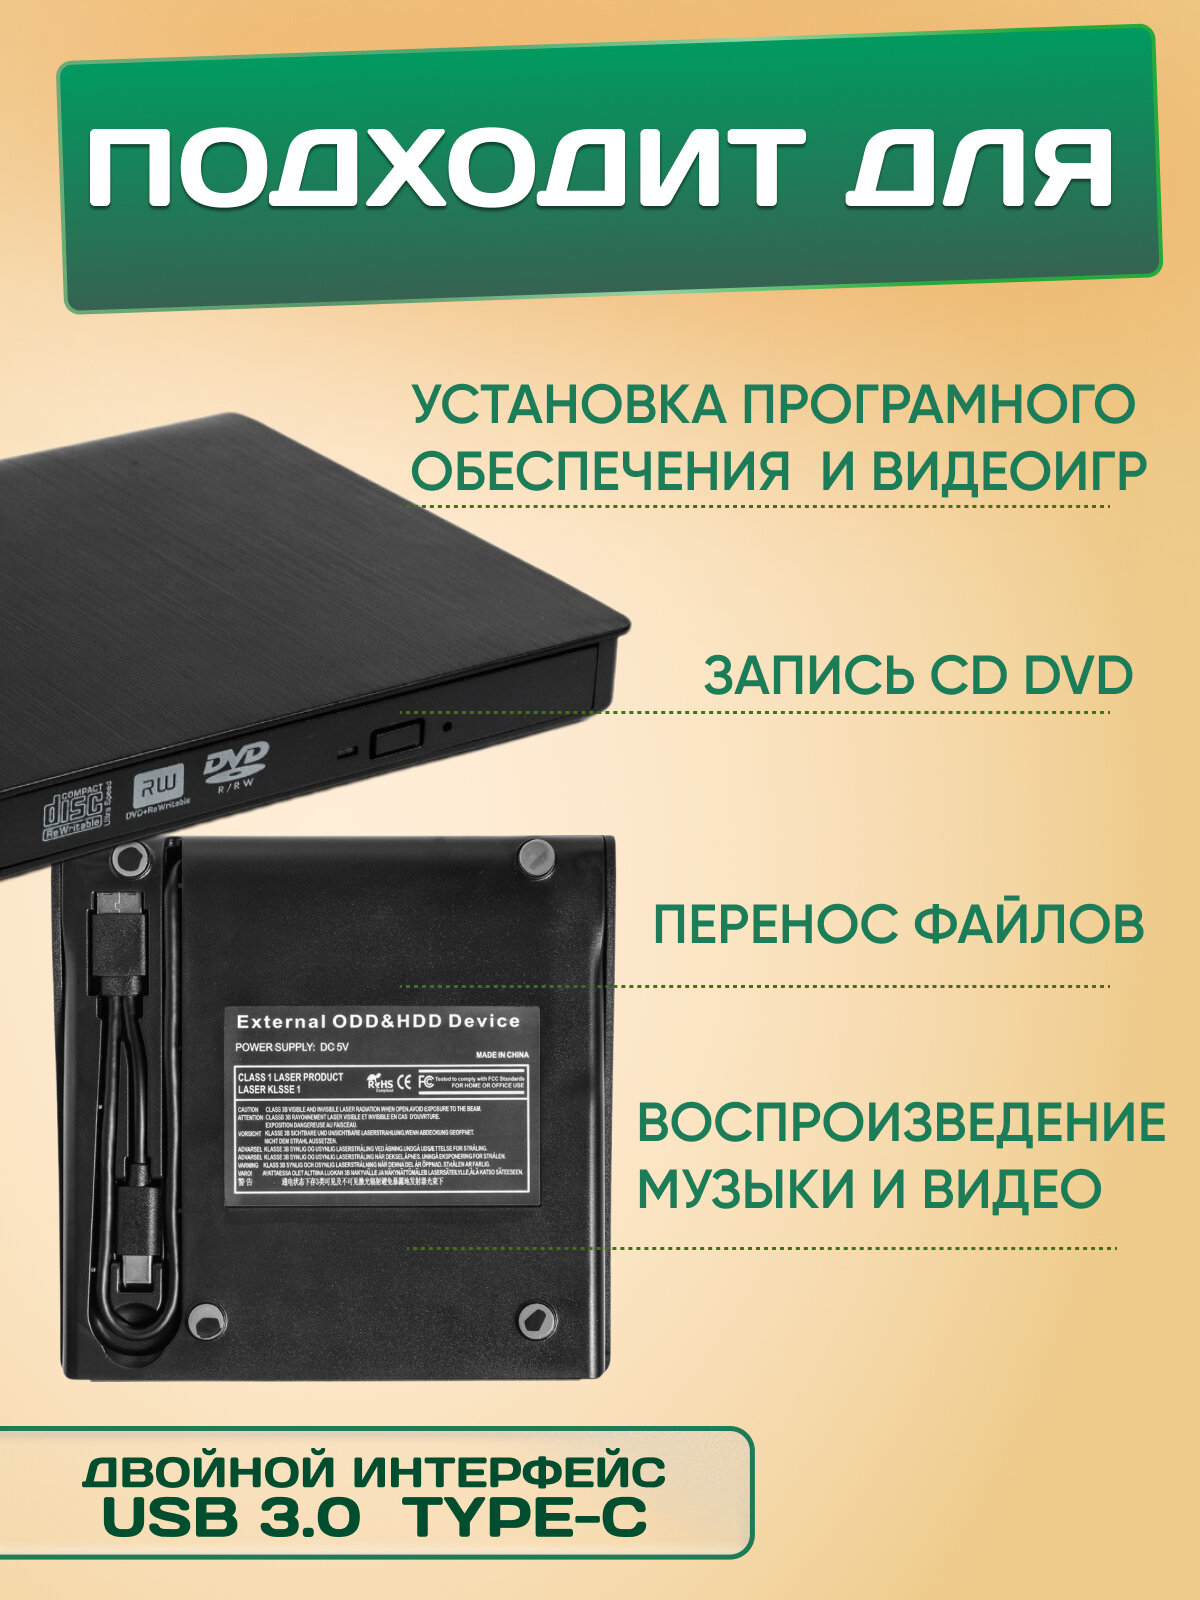 Внешний CD-ROM/RW, DVD-ROM/RW привод / оптический привод / внешний дисковод / DVD-RW, CD-RW, DVD/CD-ROM, DVD черный USB 3.0 USB Type-C